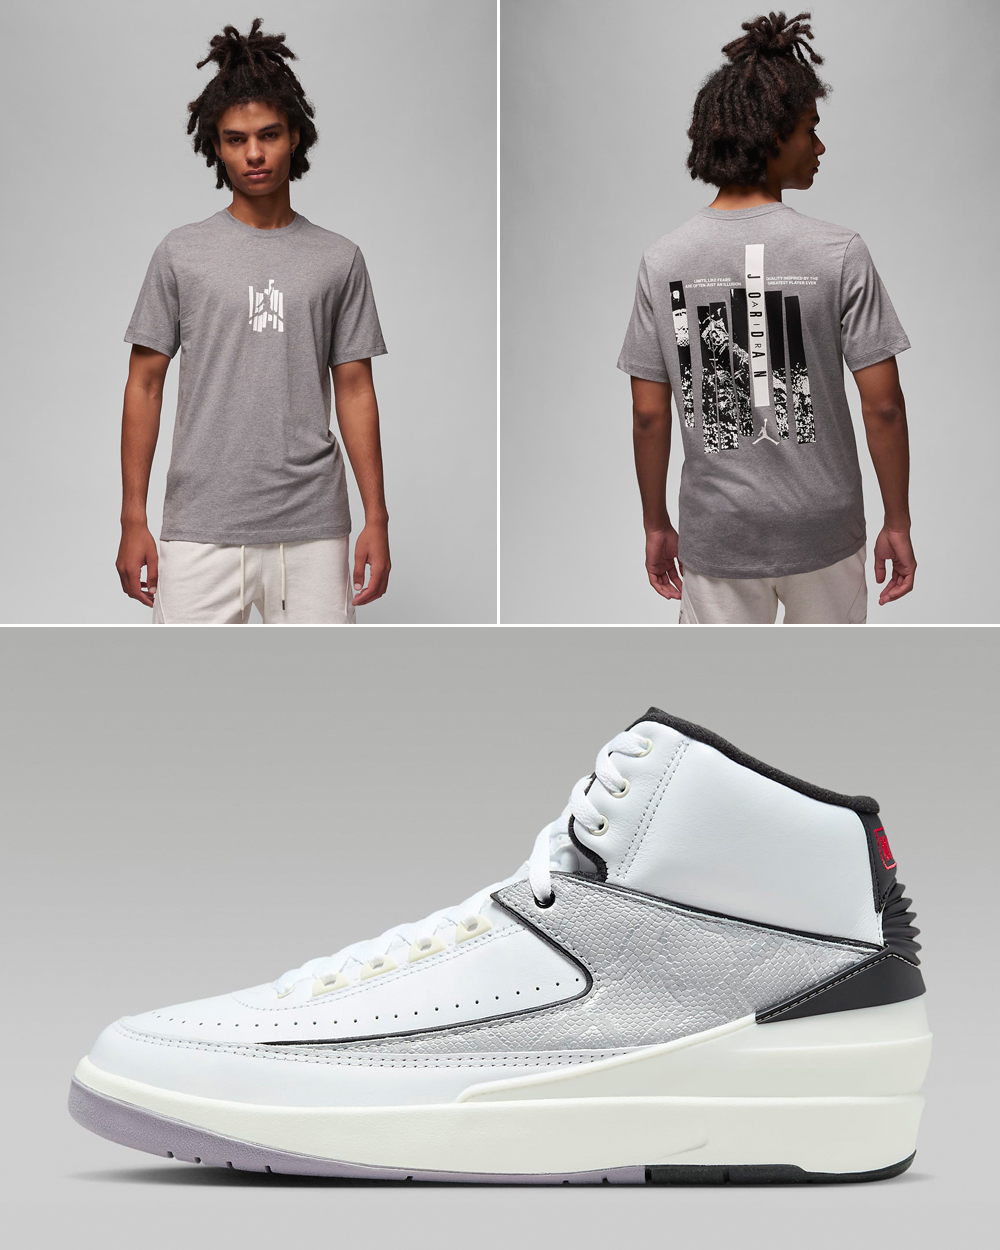 Air-Jordan-2-Python-Shirt-Matching-Outfit